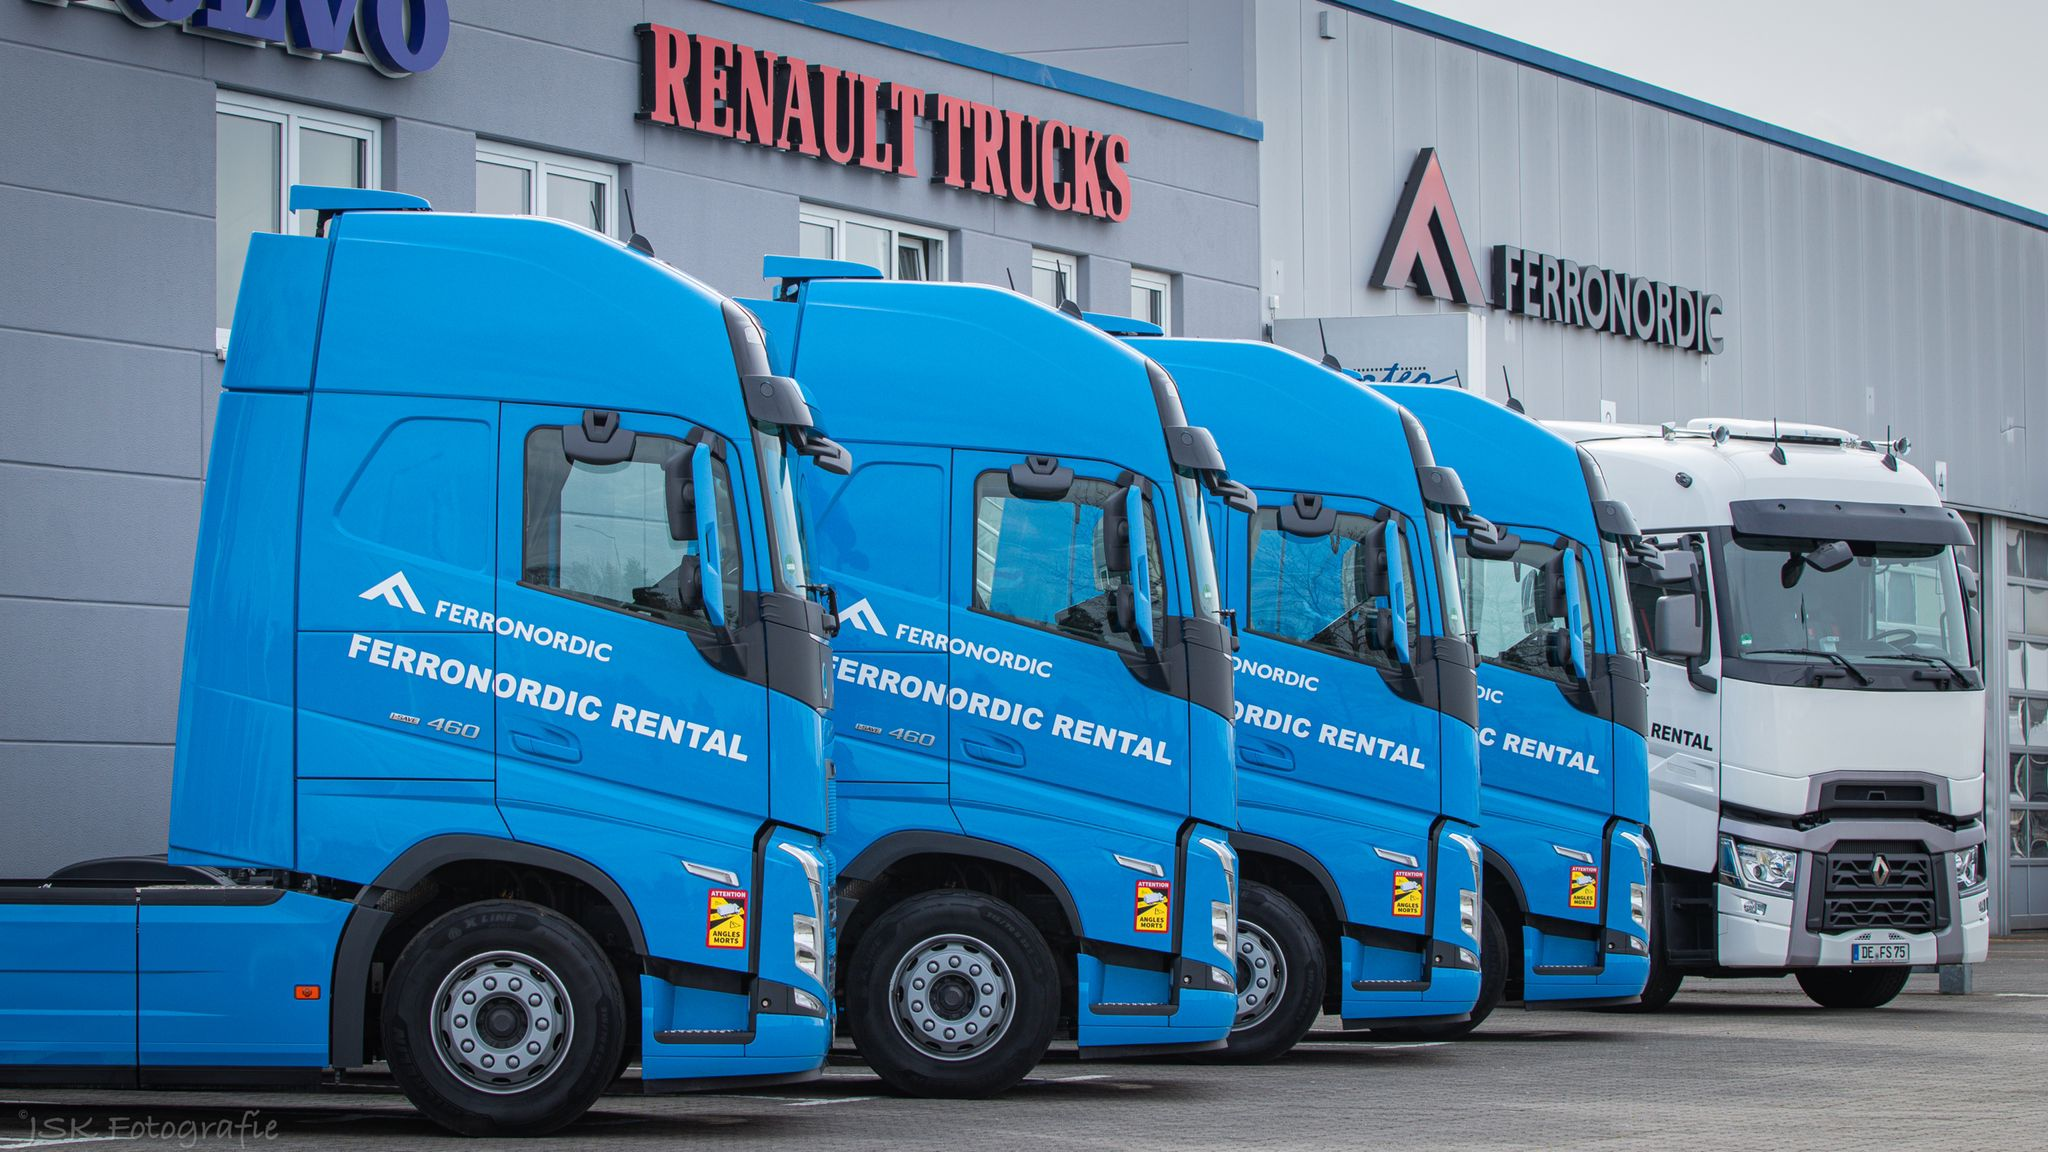 Volvo Truck bei der Verladung: Viel Leistung bei wenig Verbrauch